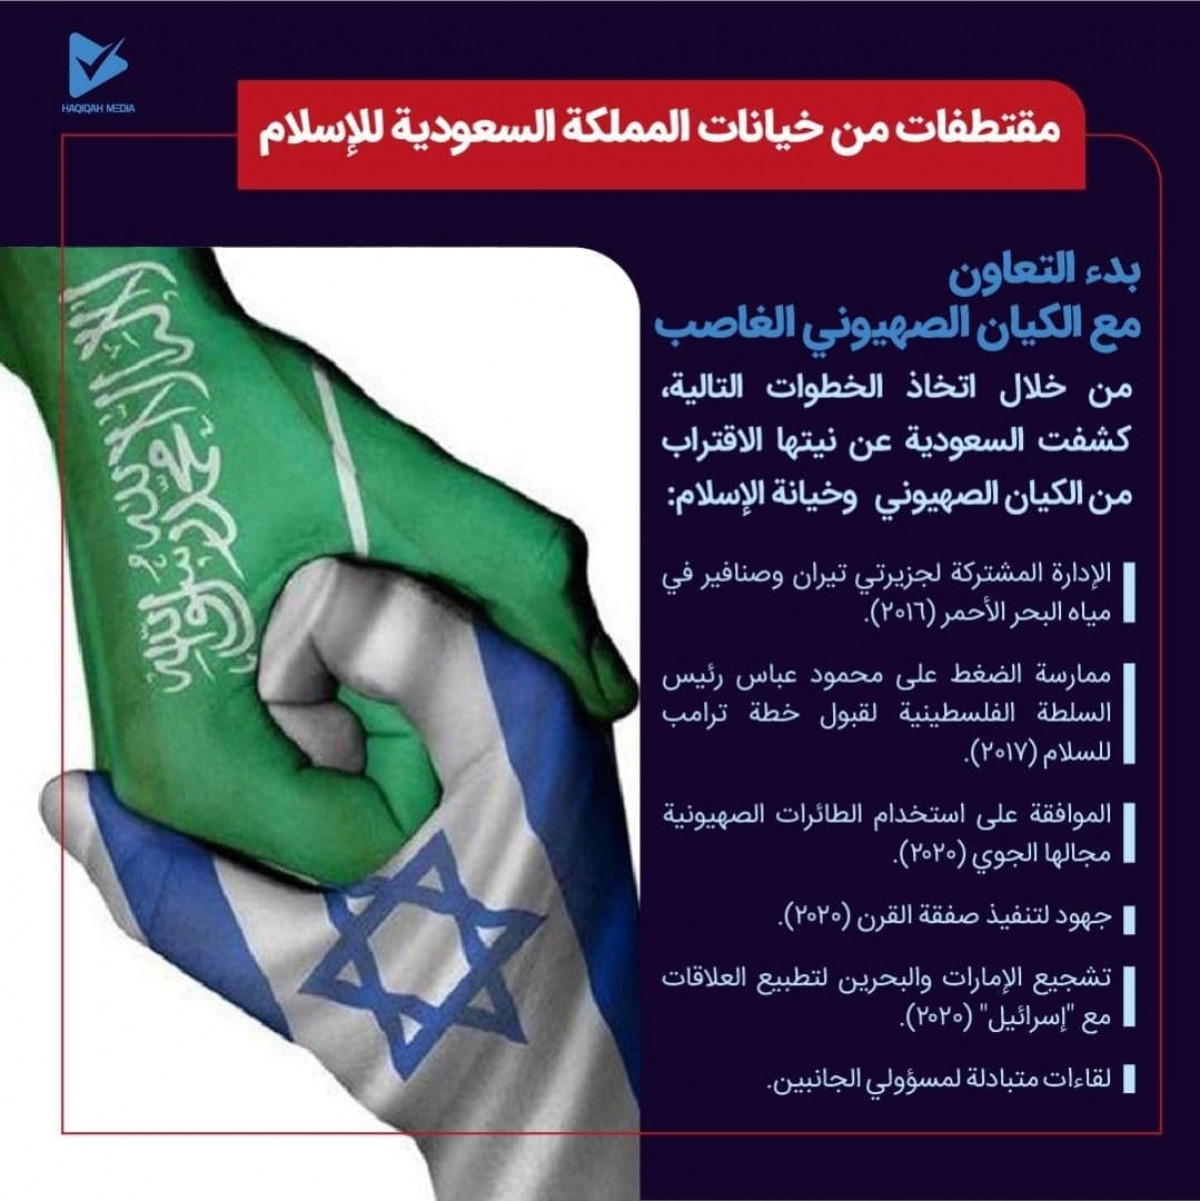 مقتطفات من خيانات المملكة السعودية للإسلام / بدء التعاون مع كيان الصهيوني الغاصب